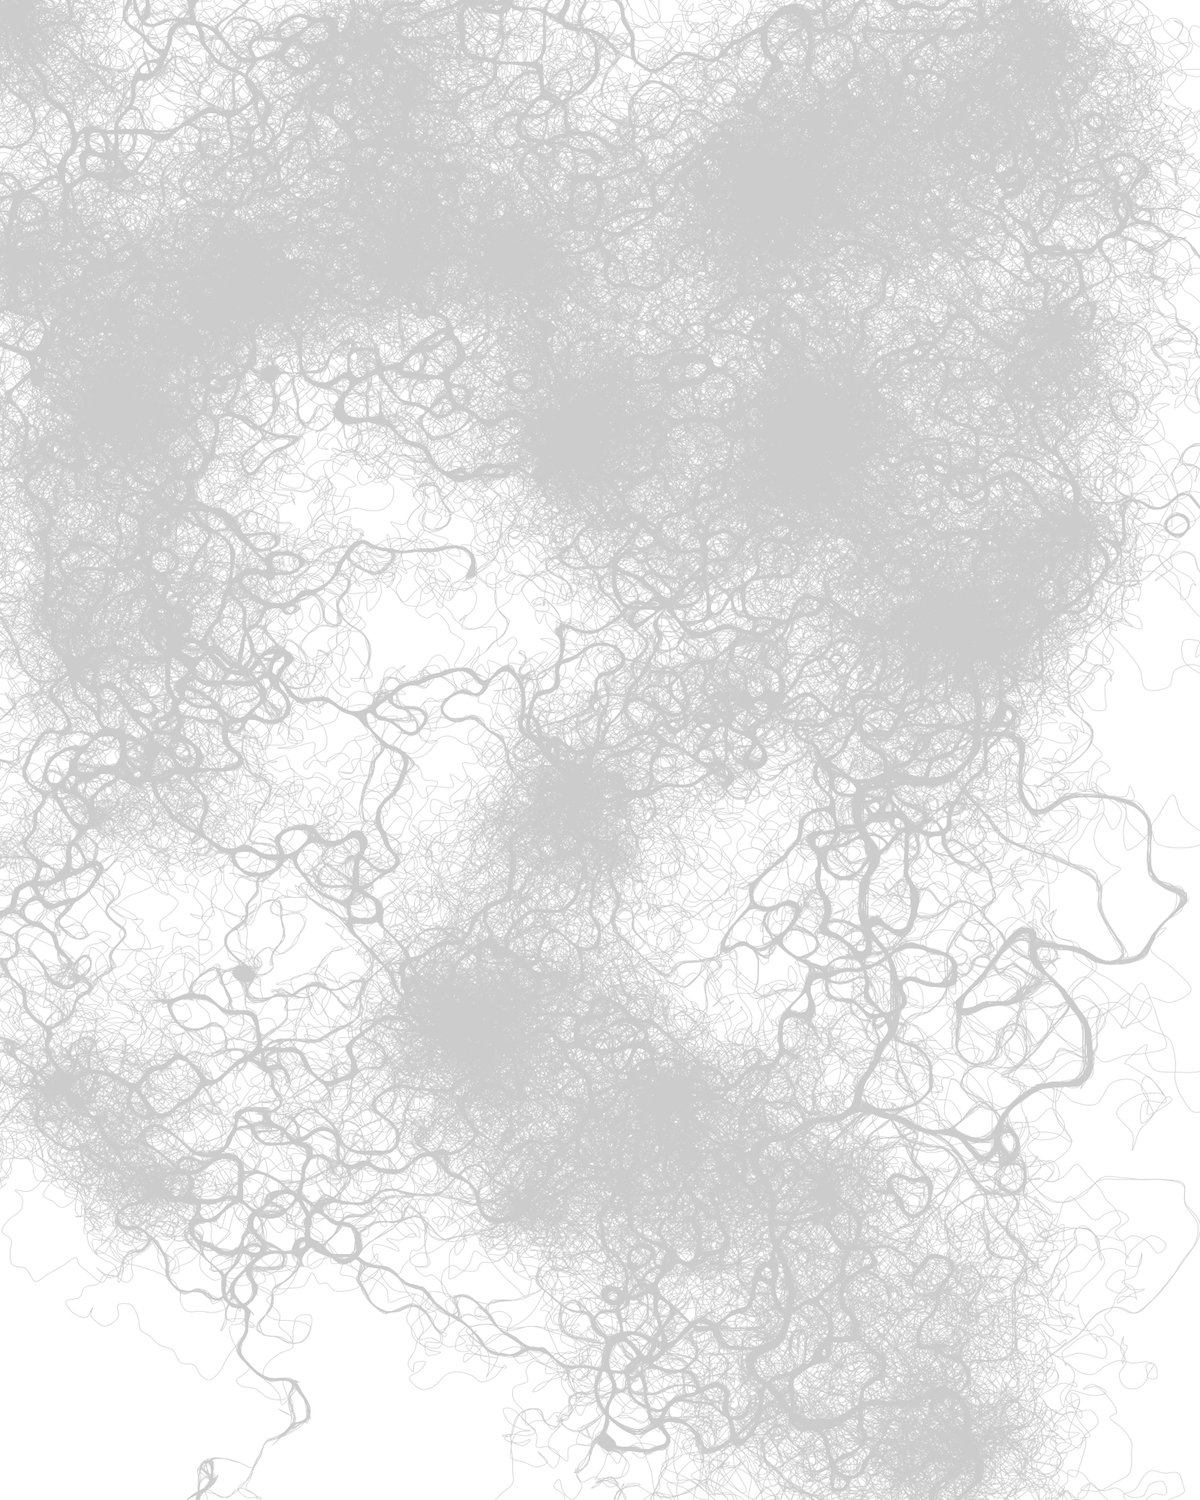 Рисуем муравьями: процедурные изображения при помощи алгоритмов оптимизации муравьиной колонии - 13